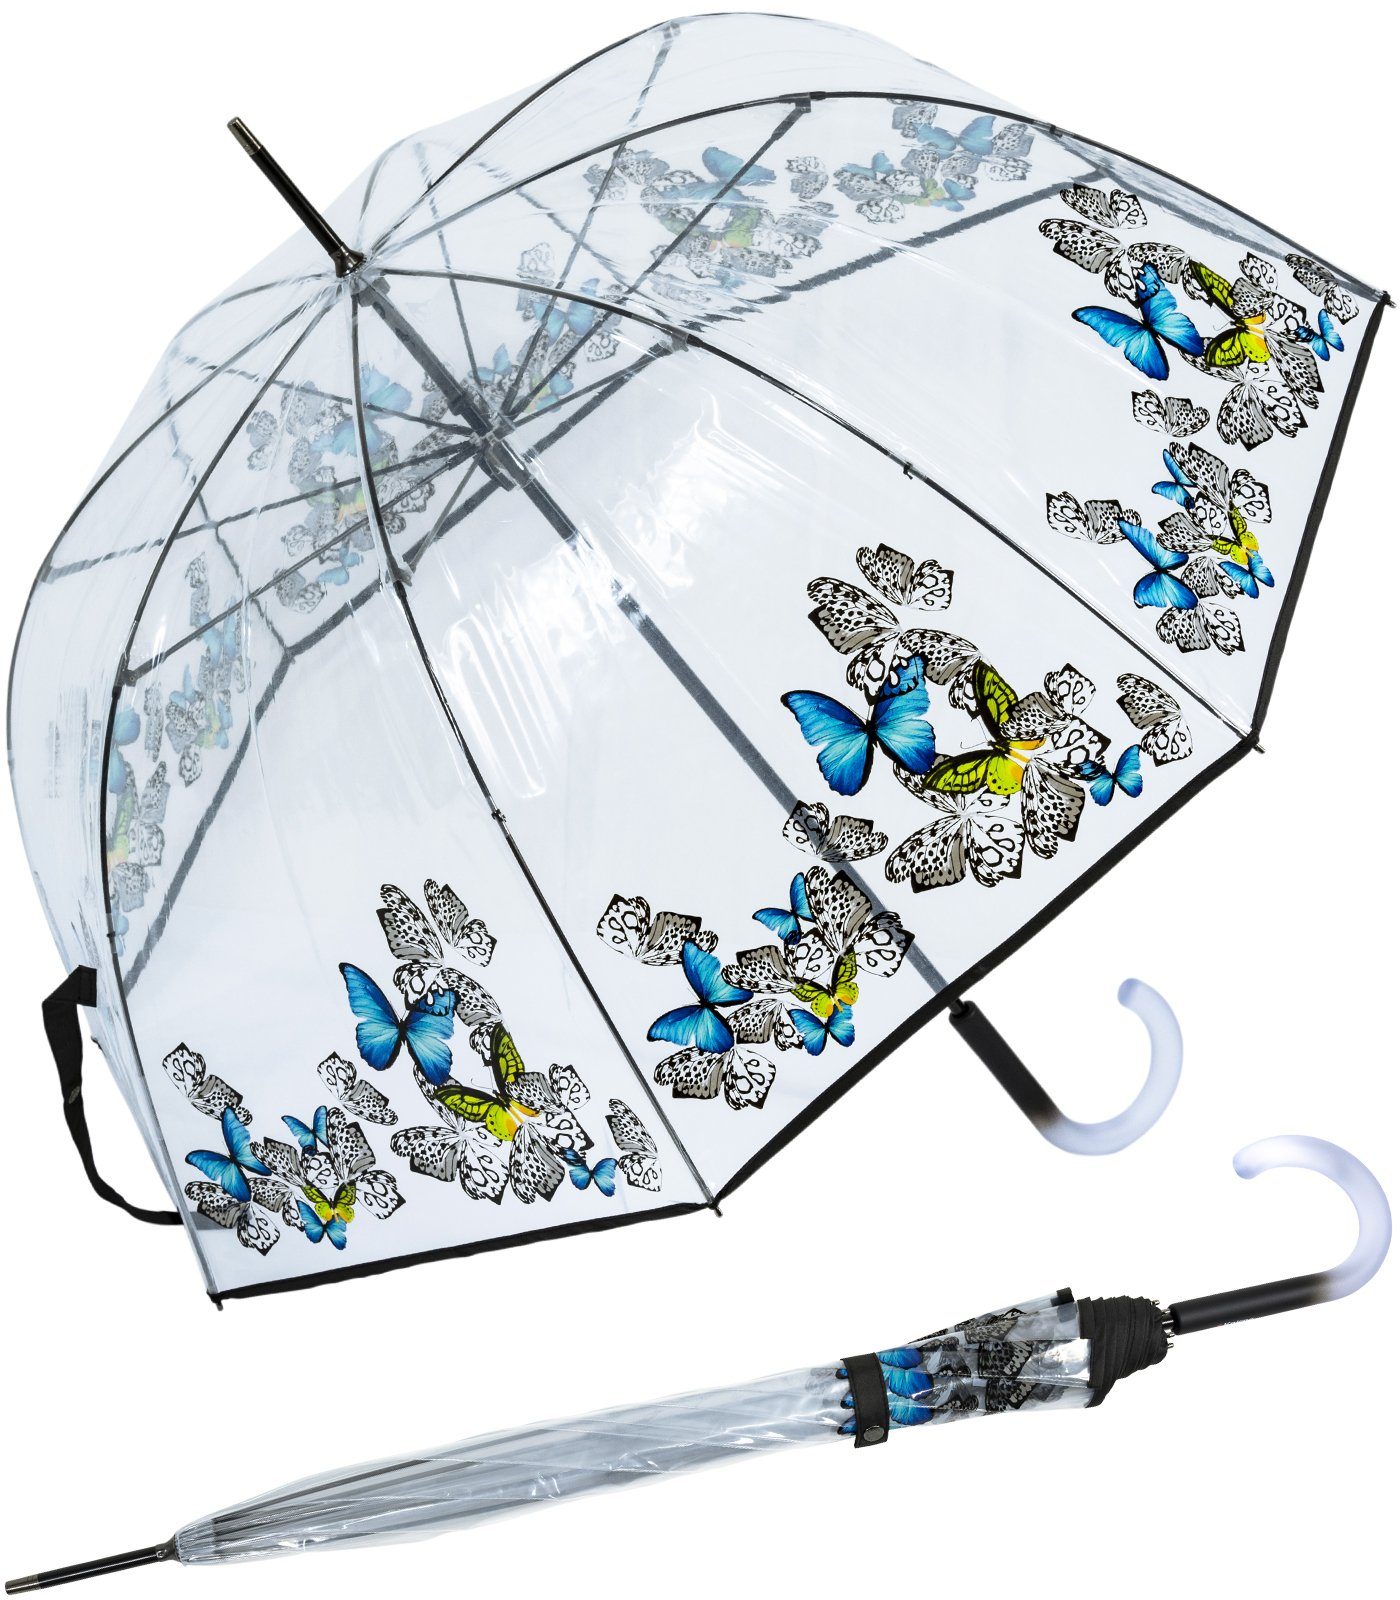 Knirps® Langregenschirm Damen Glockenschirm C.760 transparent 2Float, durchsichtig, mit schönem Aufdruck